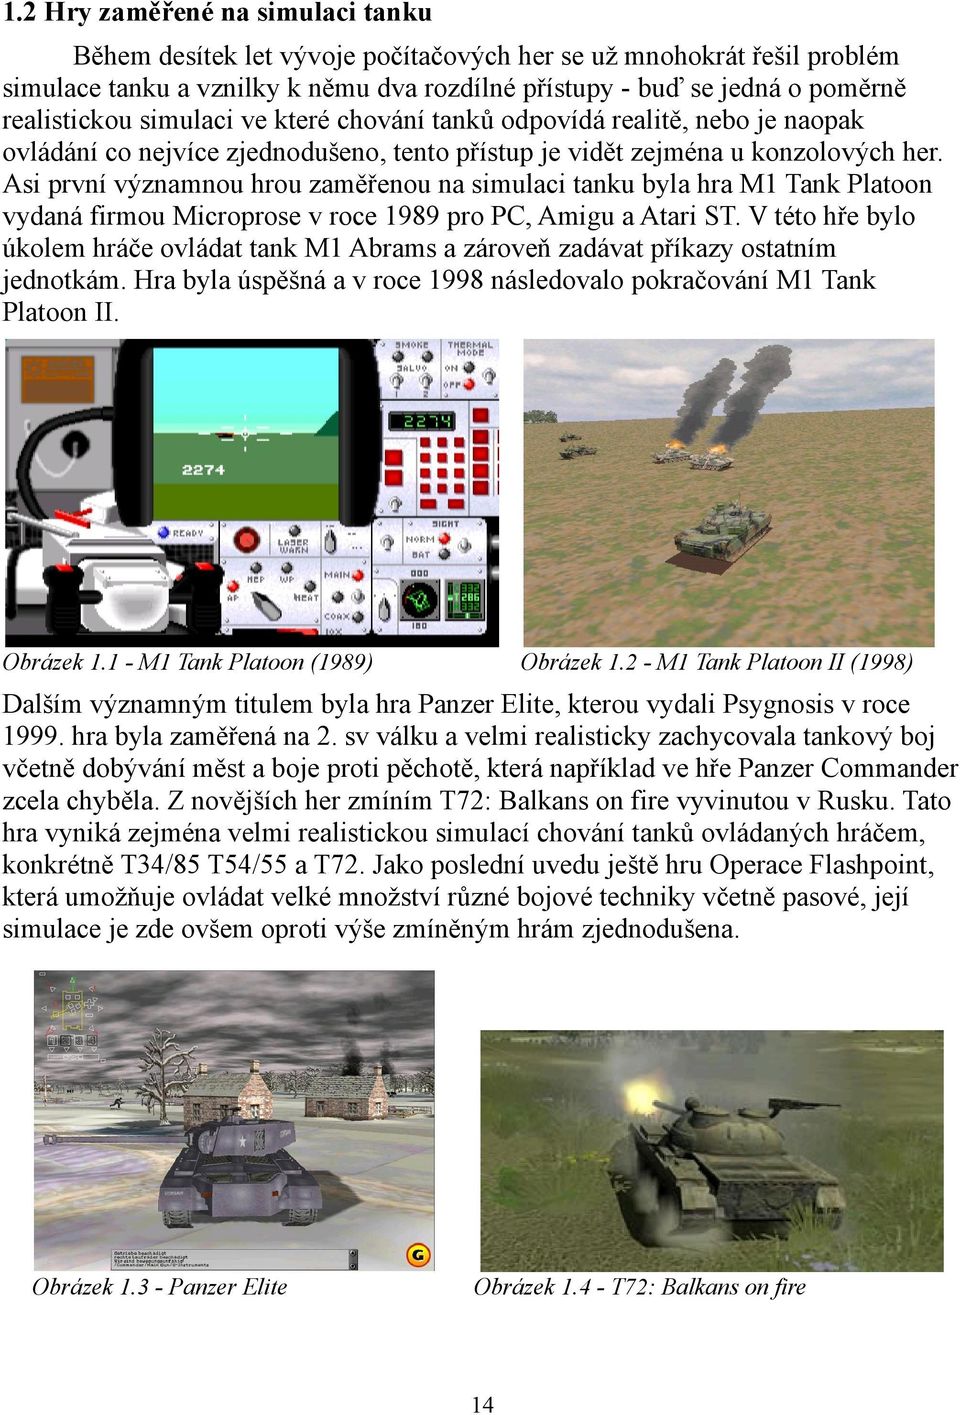 Asi první významnou hrou zaměřenou na simulaci tanku byla hra M1 Tank Platoon vydaná firmou Microprose v roce 1989 pro PC, Amigu a Atari ST.